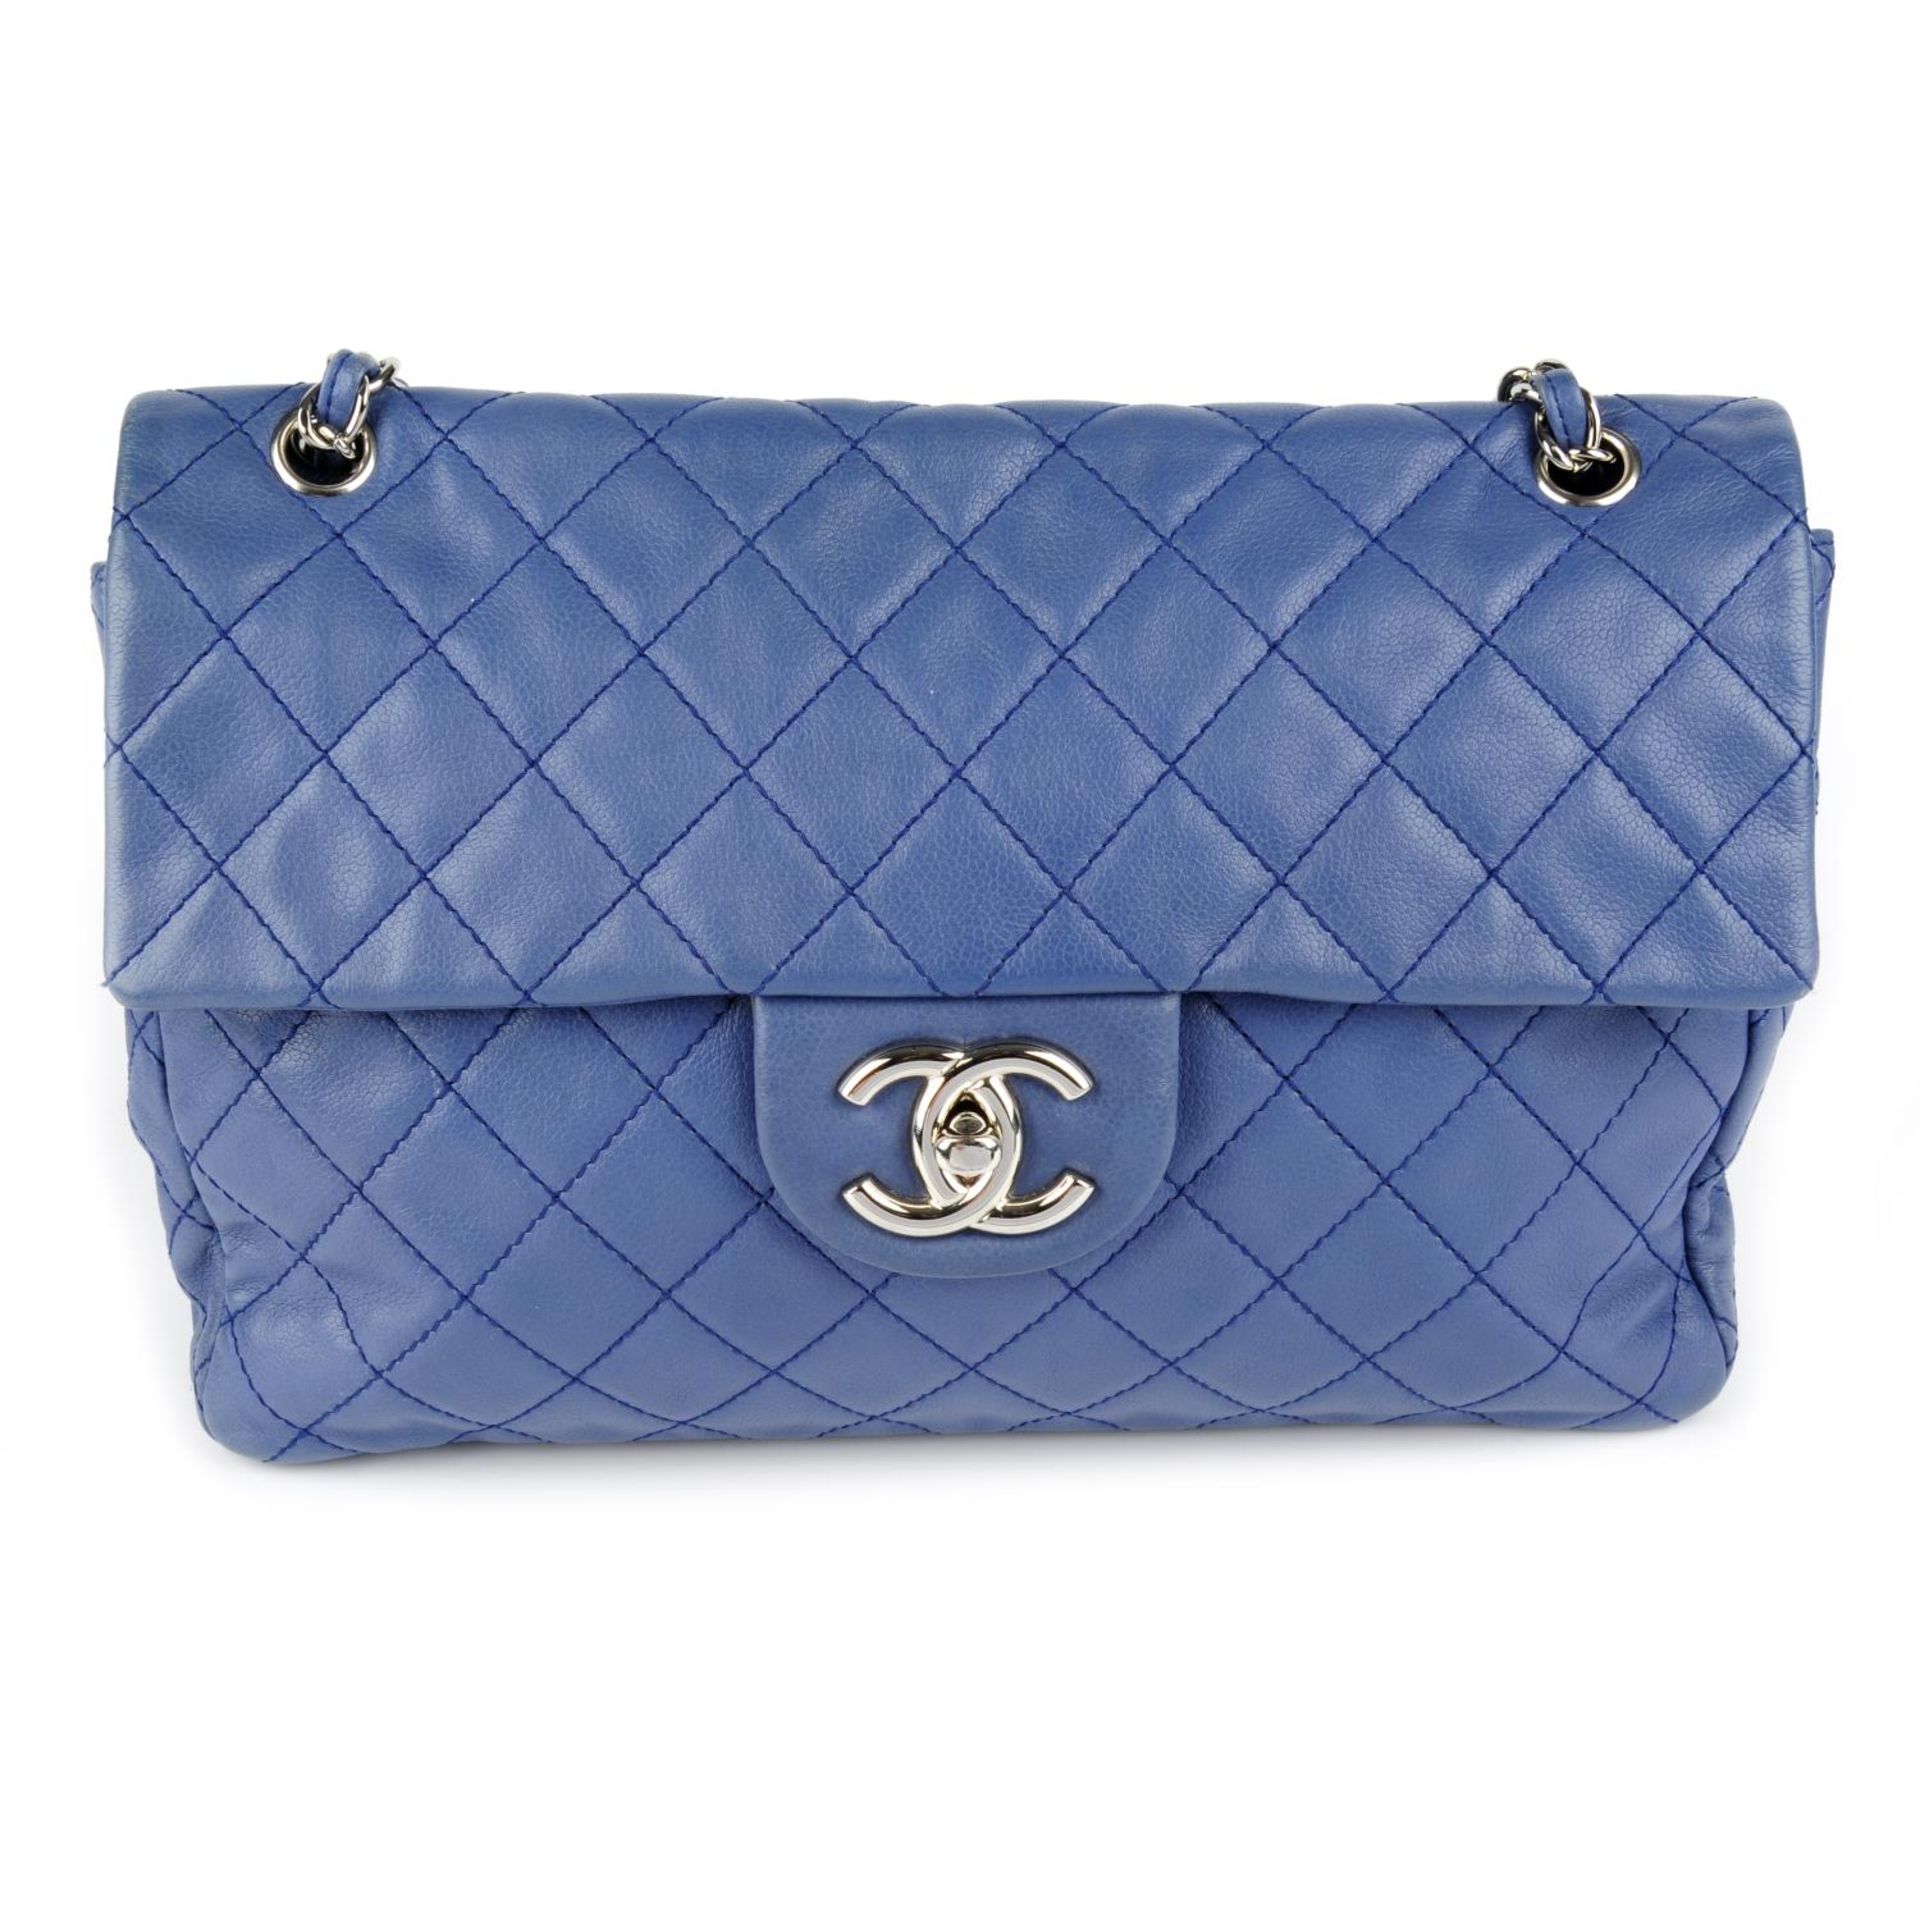 CHANEL - a blue Single Flap handbag.